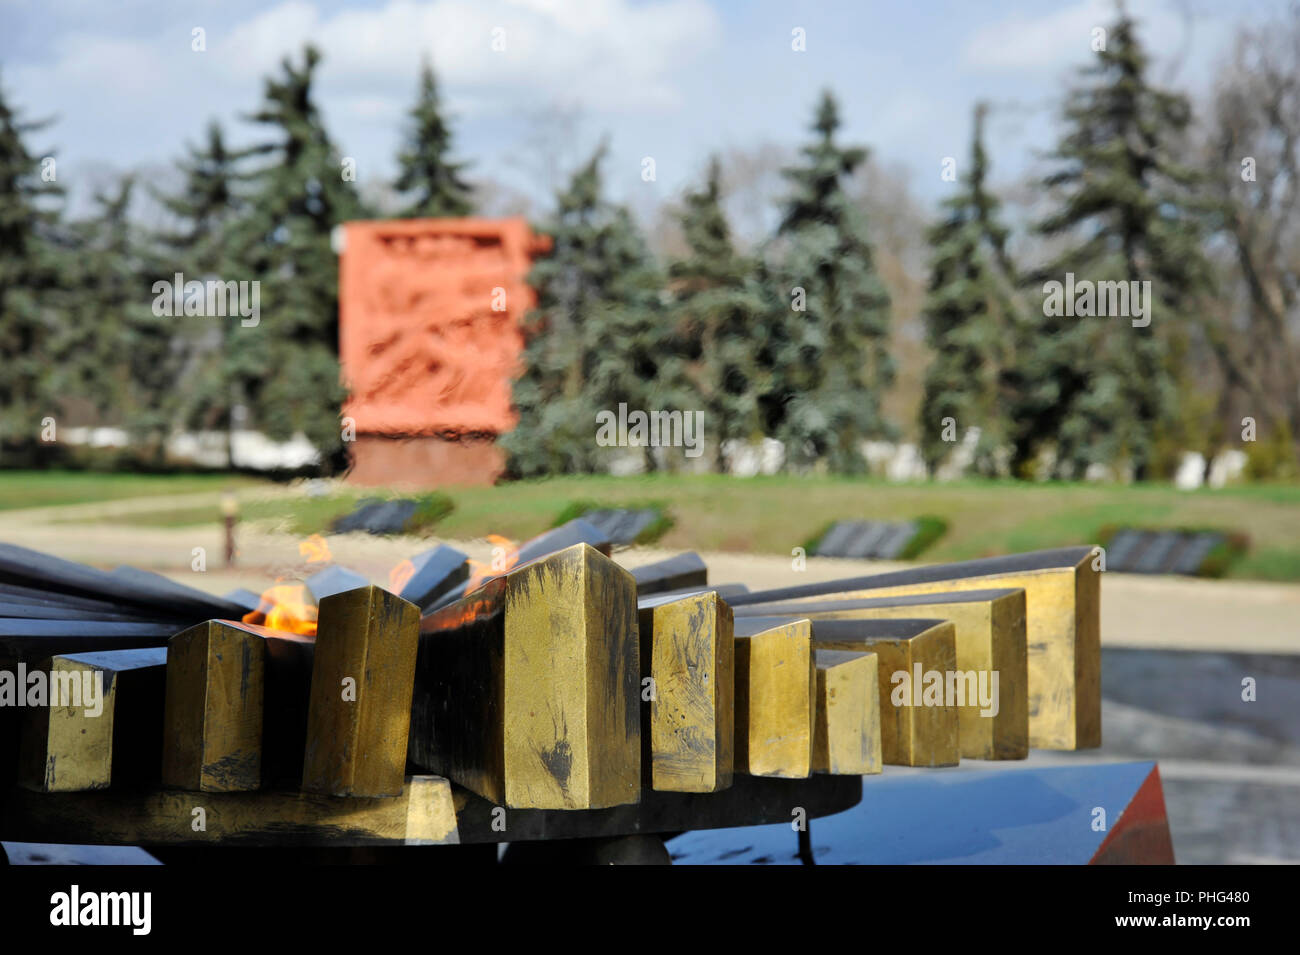 Mémorial en l'honneur de la victoire de la Seconde Guerre mondiale. Chisinau, Moldova Banque D'Images